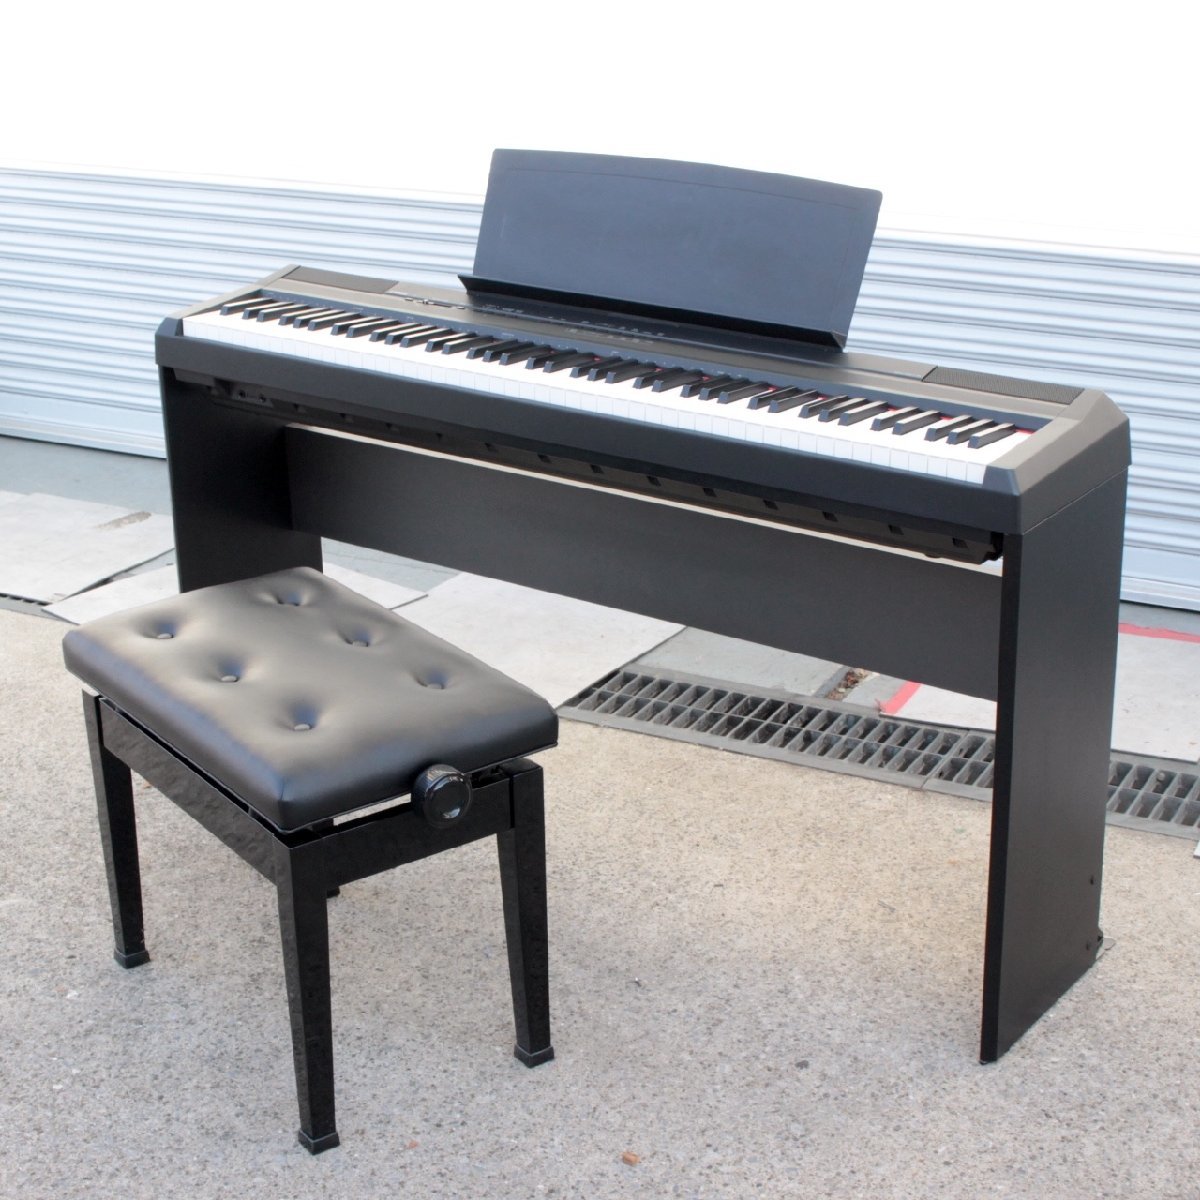 東京都杉並区にて ヤマハ 電子ピアノ P-105B 2014年製 を出張買取させて頂きました。